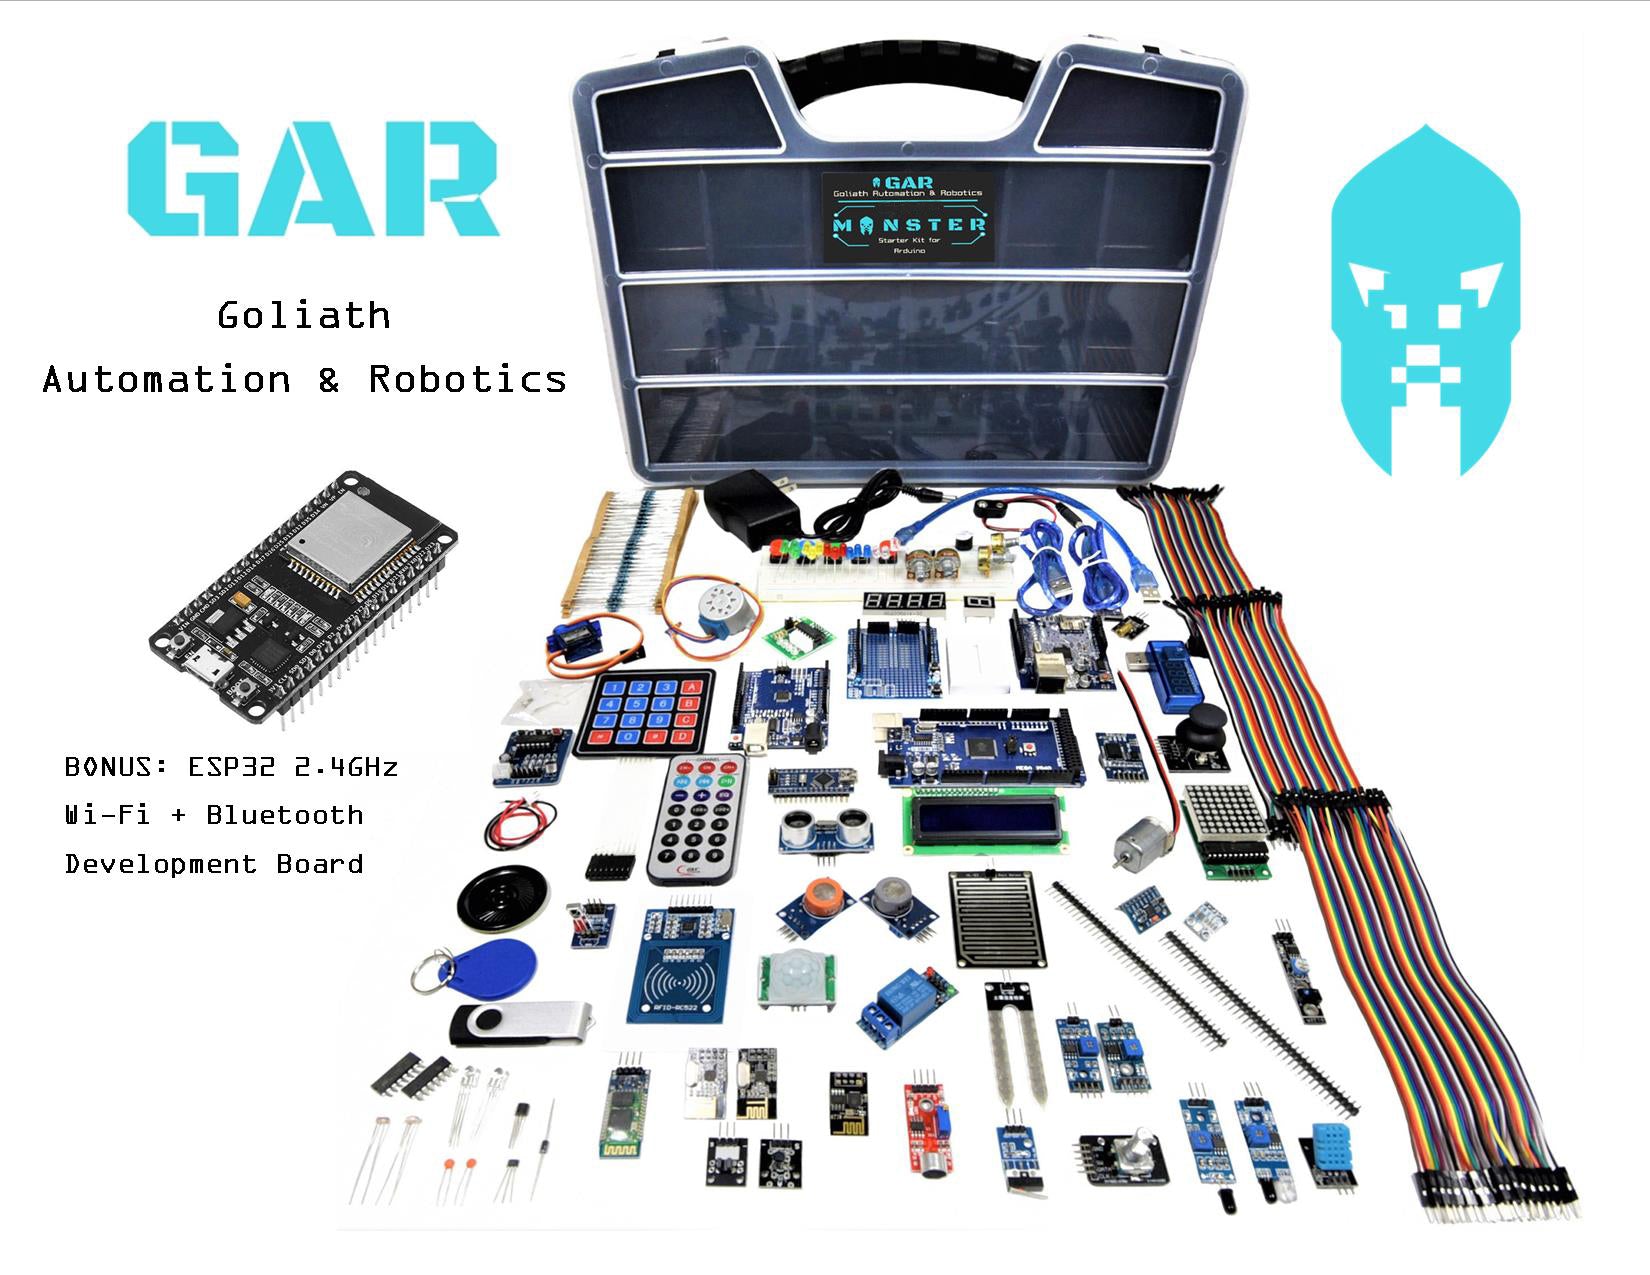 Kilimanjaro Sanders præmedicinering GAR Monster Starter Kit for Arduino – Goliath Automation & Robotics